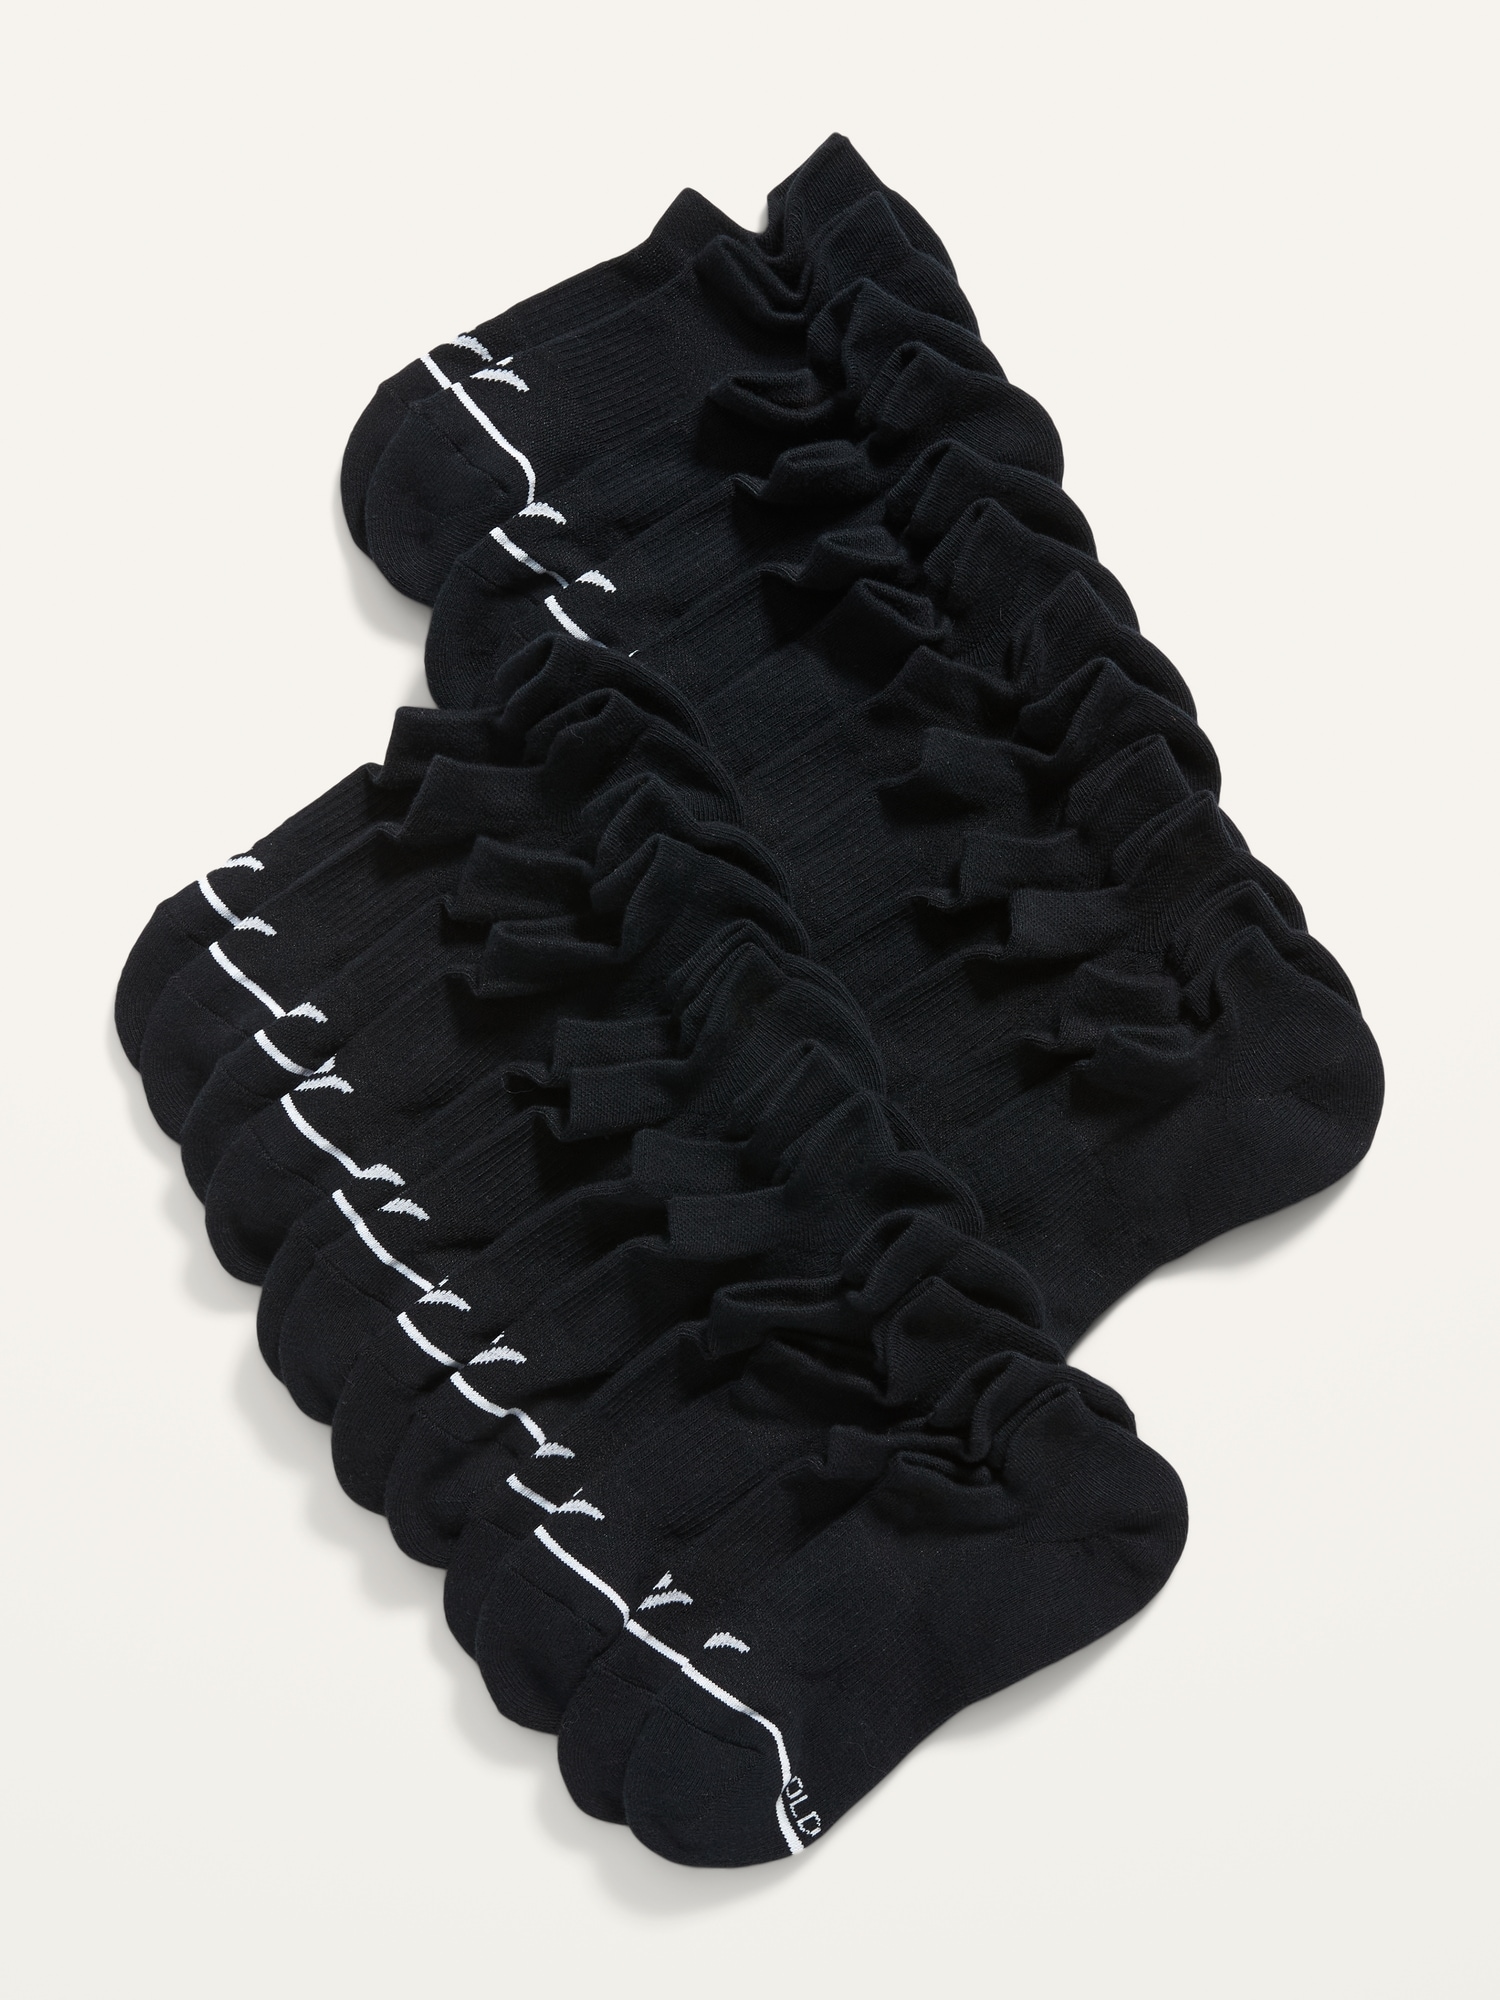 Old Navy Performance Ankle Socks 12-Pack for Women black. 1